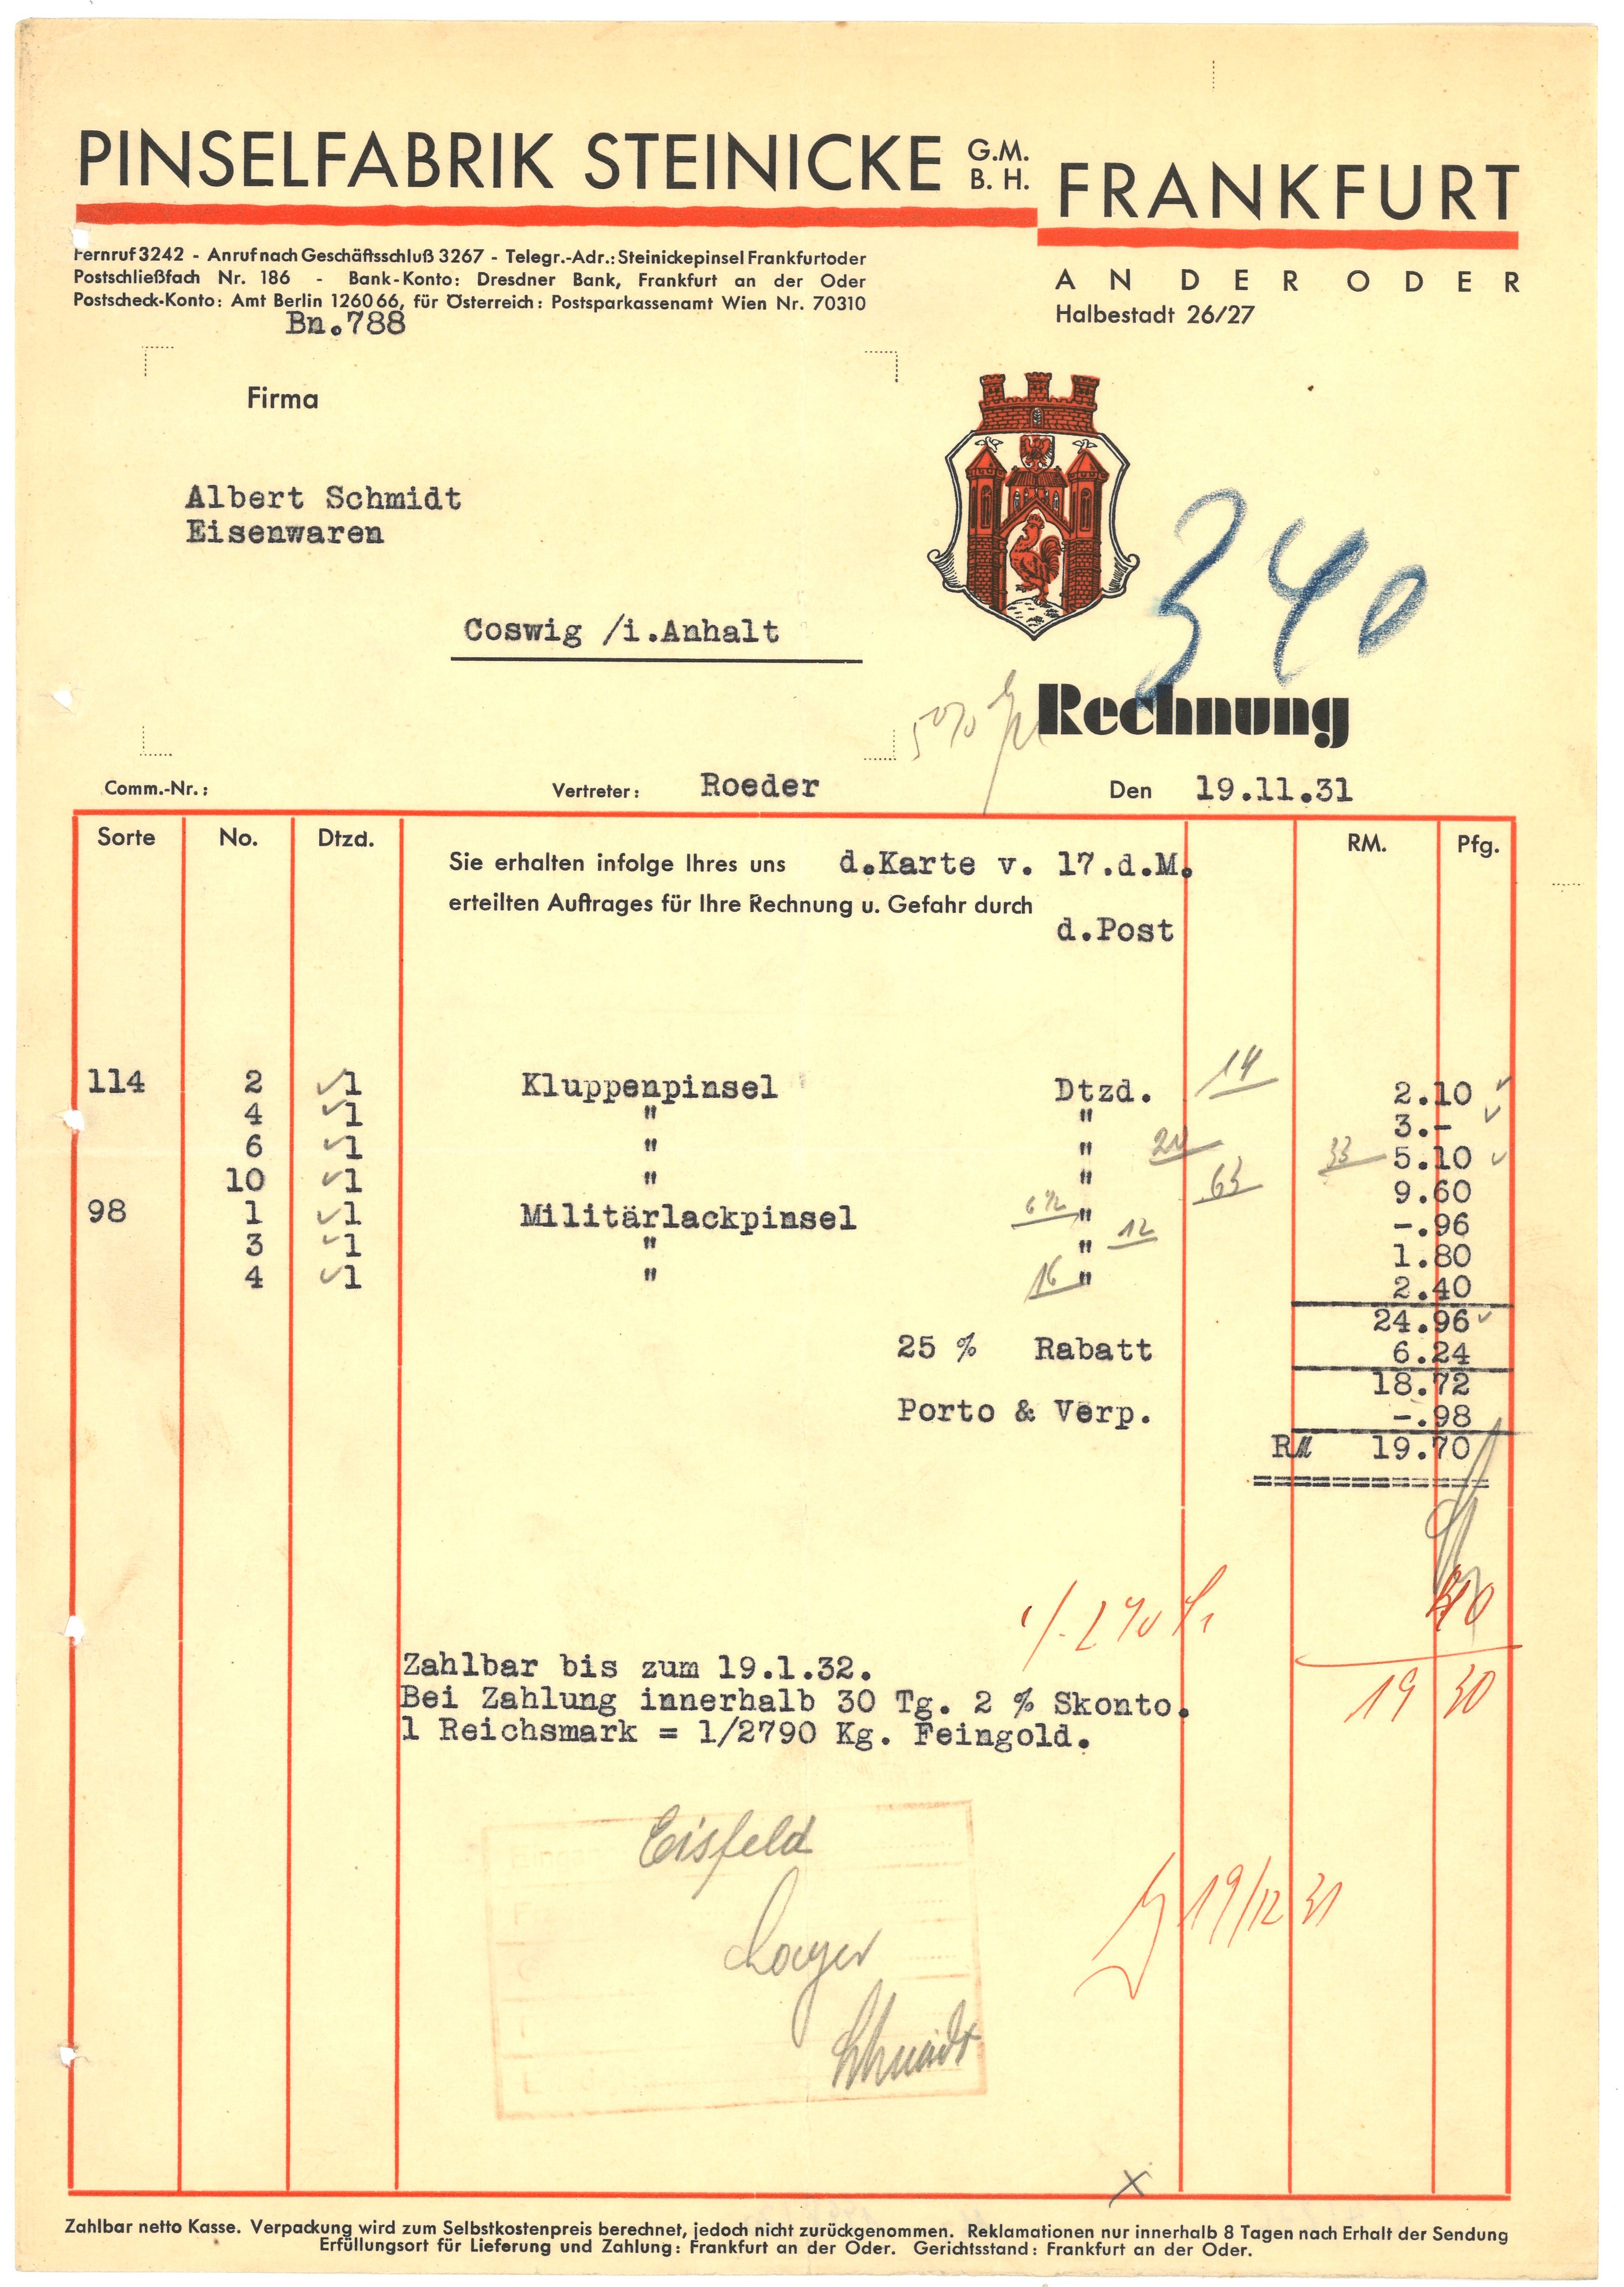 Rechnung der Pinselfabrik Steinicke in Frankfurt (Oder) 1931 (Landesgeschichtliche Vereinigung für die Mark Brandenburg e.V., Archiv CC BY)